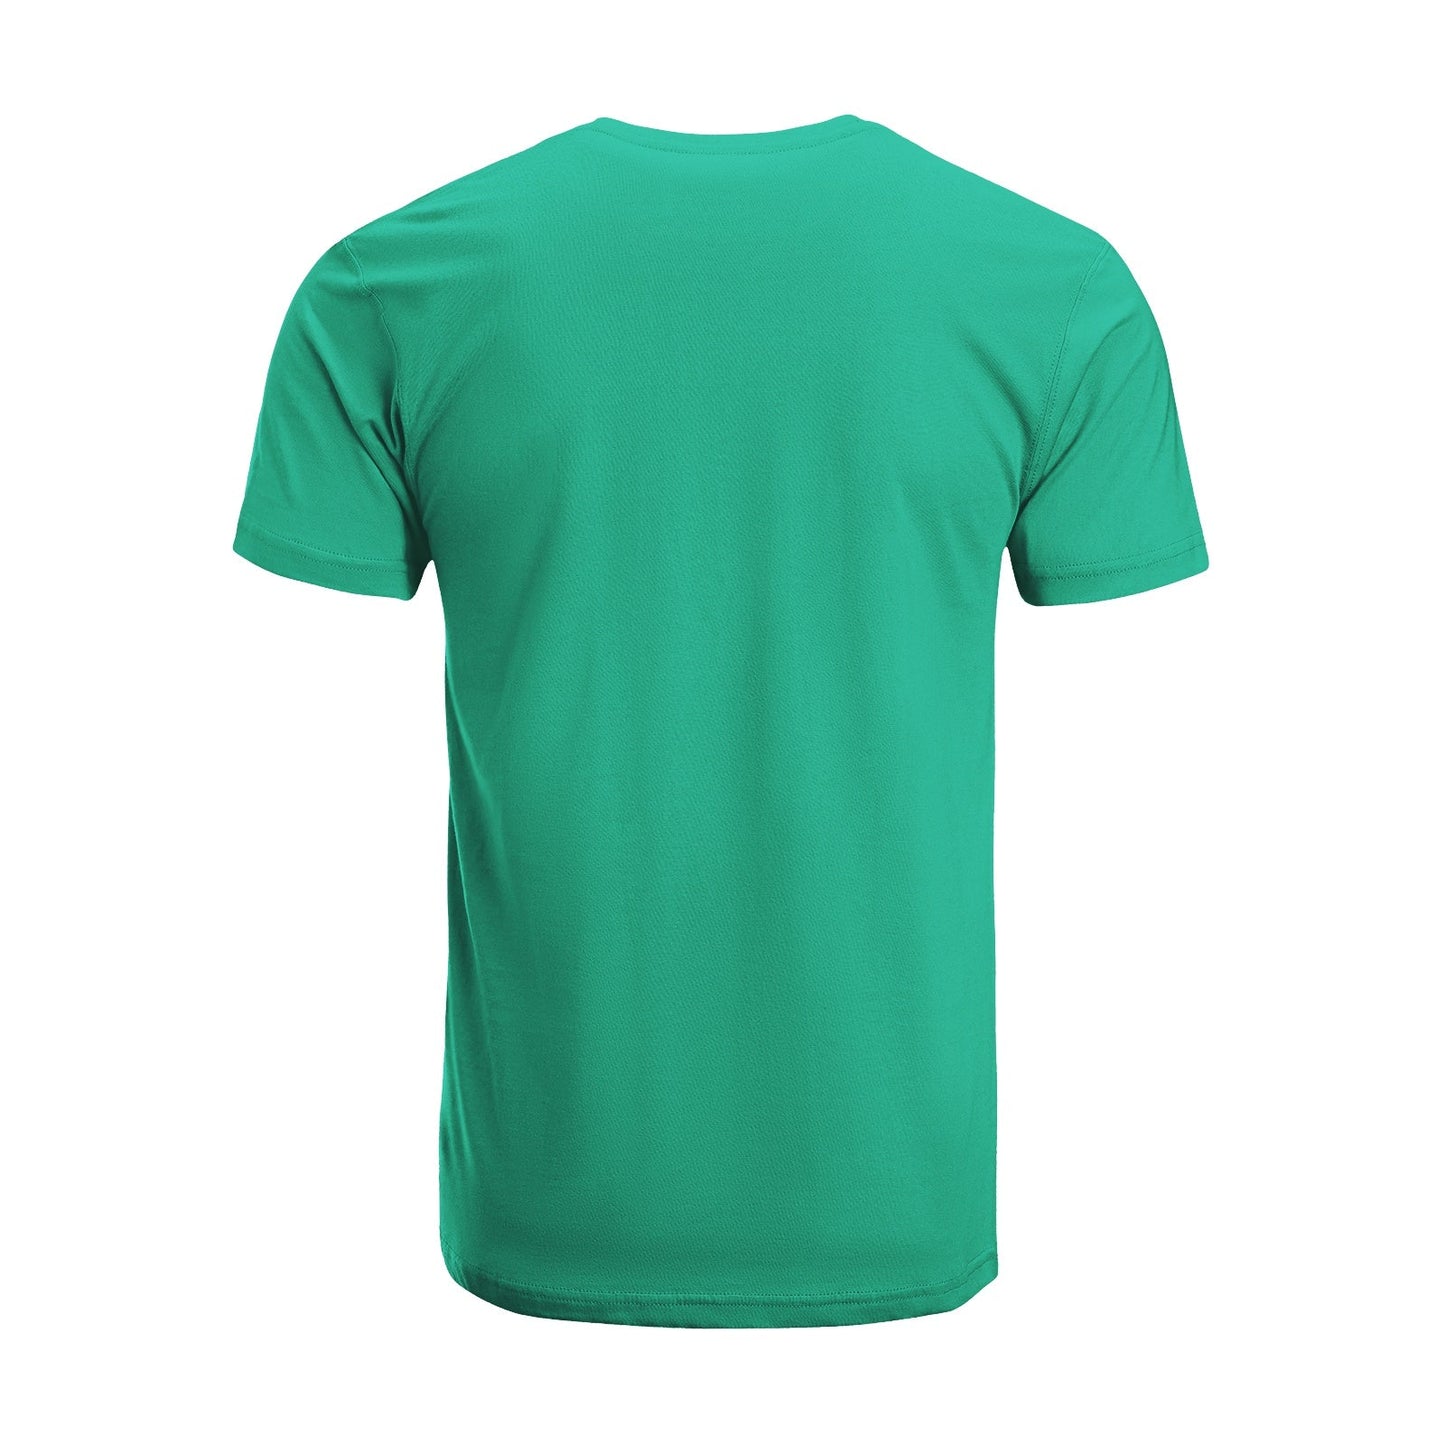 Unisex Short Sleeve Crew Neck Cotton Jersey T-Shirt TRUCK 45